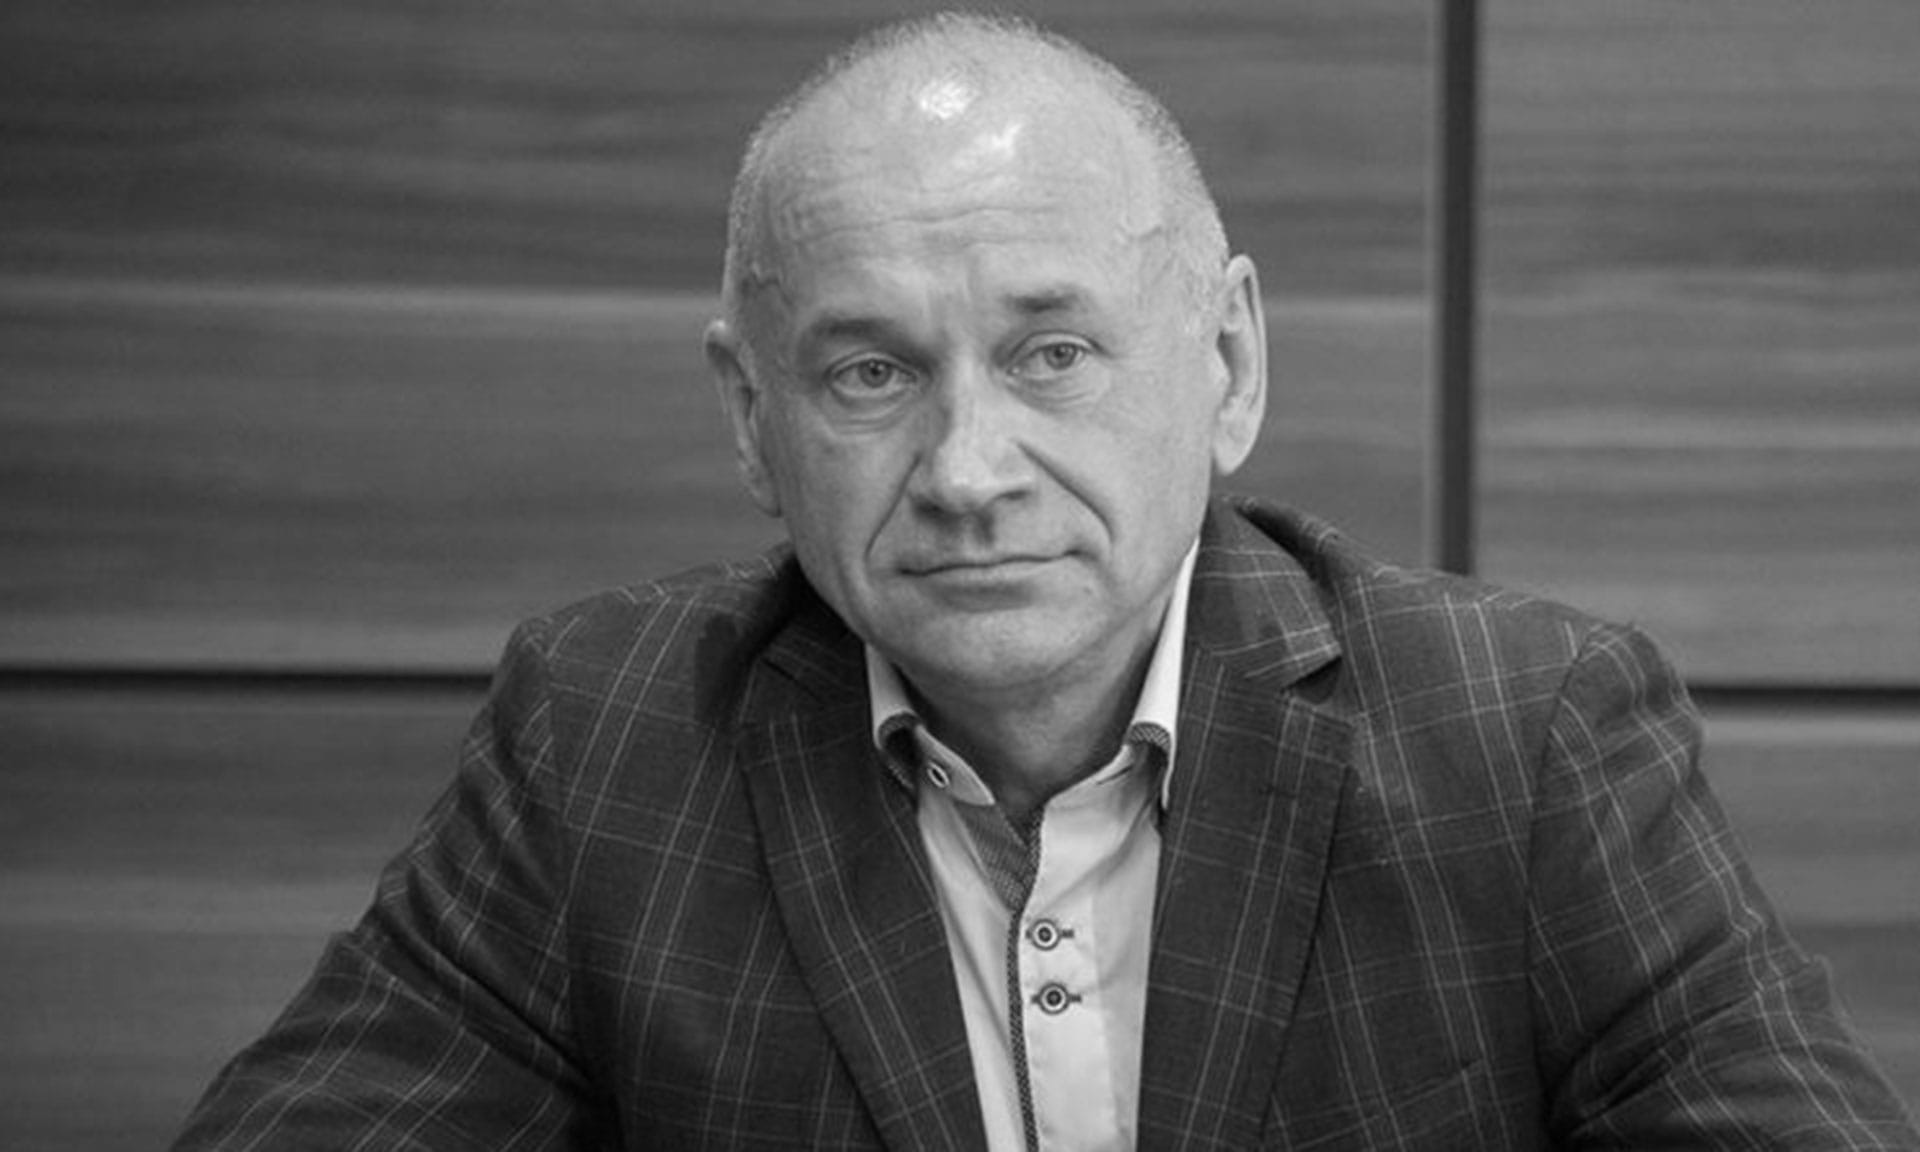 Трагически погиб глава брянского агрохолдинга «Охотно» Владимир Жутенков